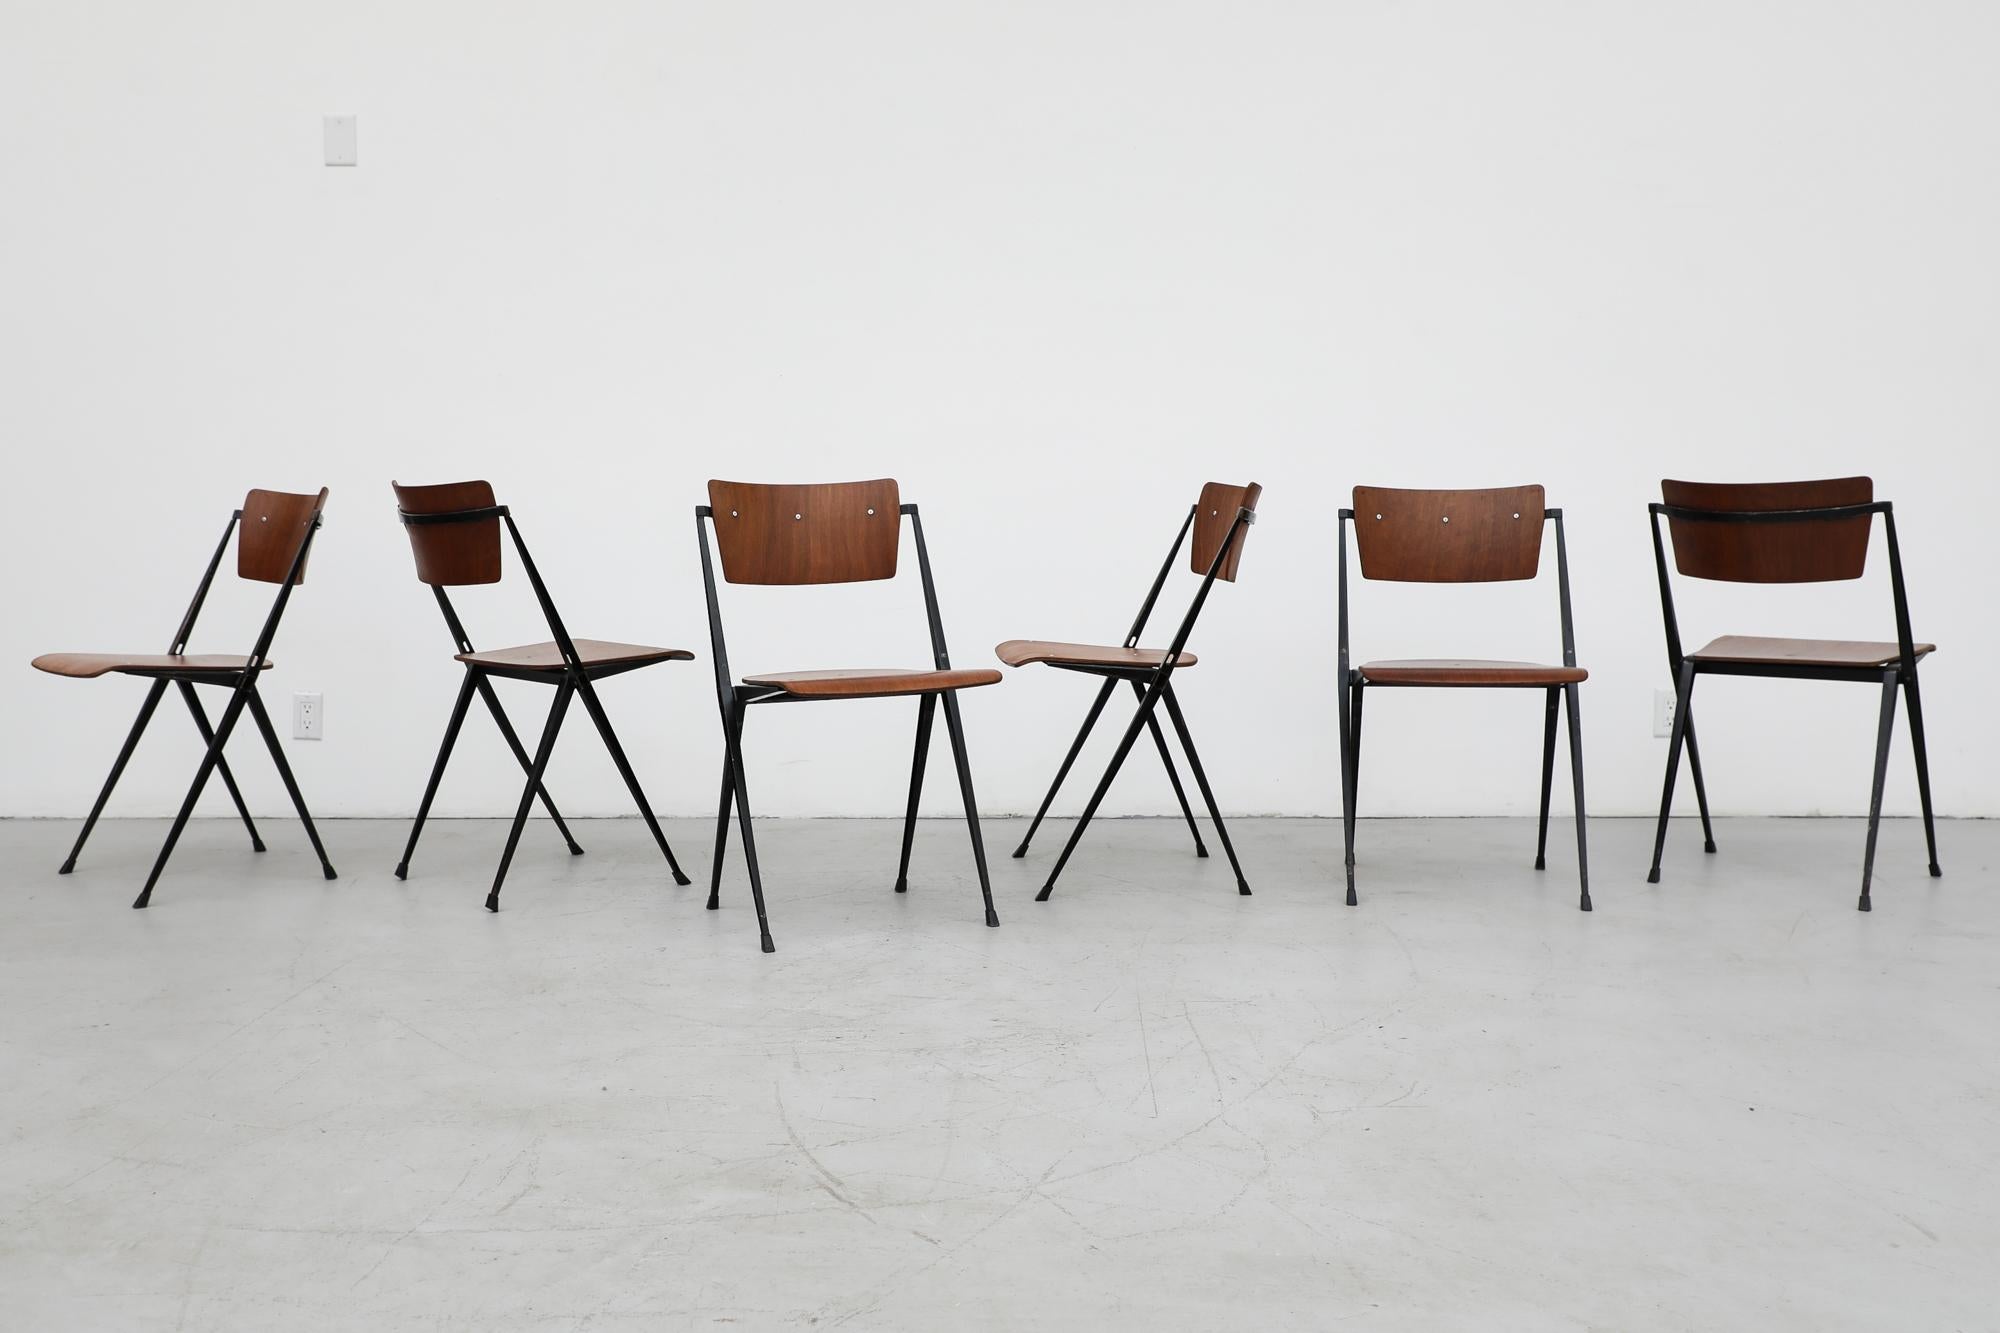 Magnifique ensemble de 6 chaises empilables 'Pyramide' de Wim Rietveld pour Ahrend de Cirkel. Récompensées par le prix 